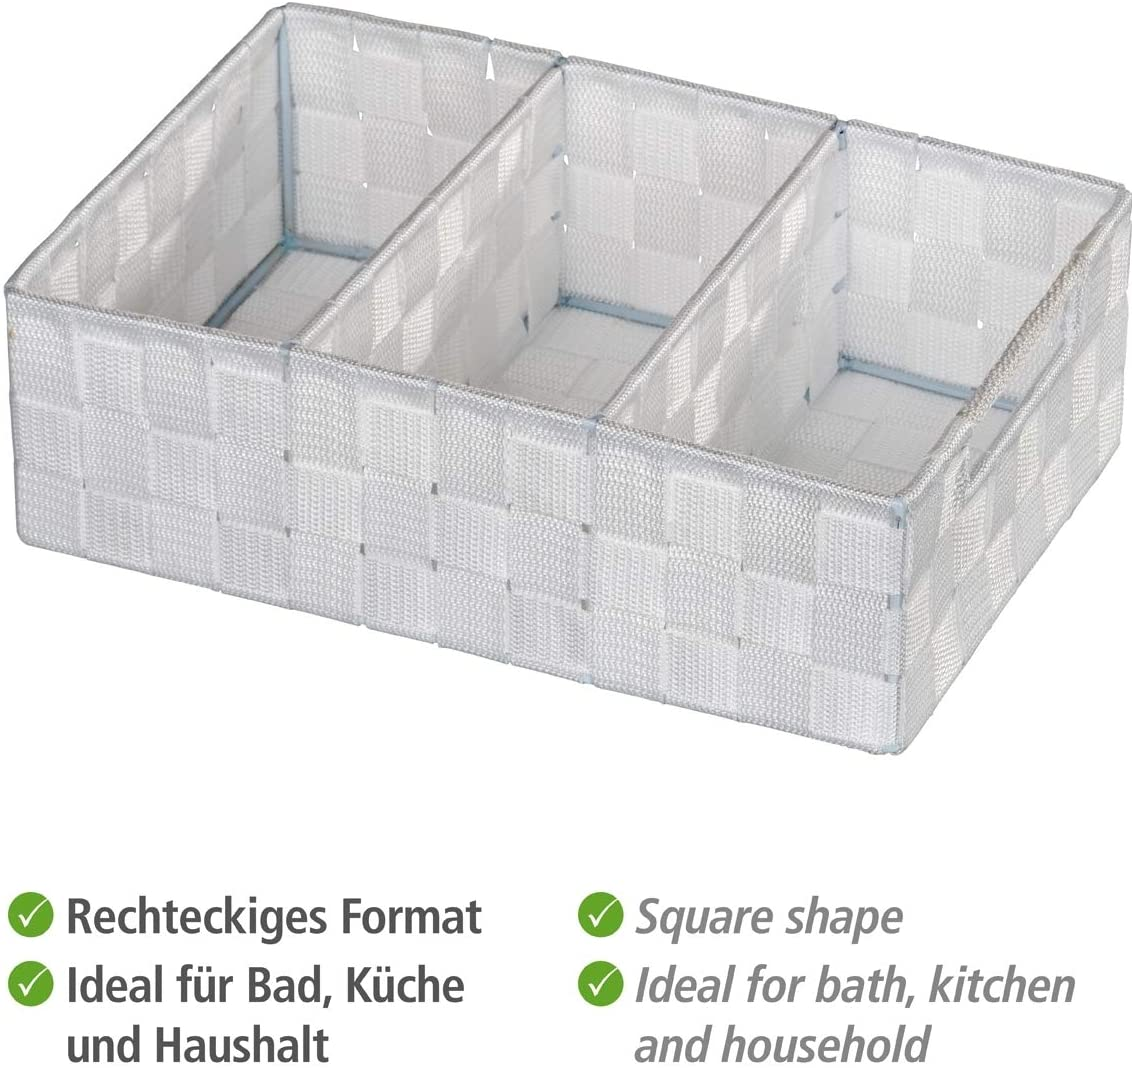 Organizer Adria Weiß 3 Fächer - Aufbewahrungsbox, 3 Fächer mit Griff, Polypropylen, 32 x 10 x 21 cm, Weiß